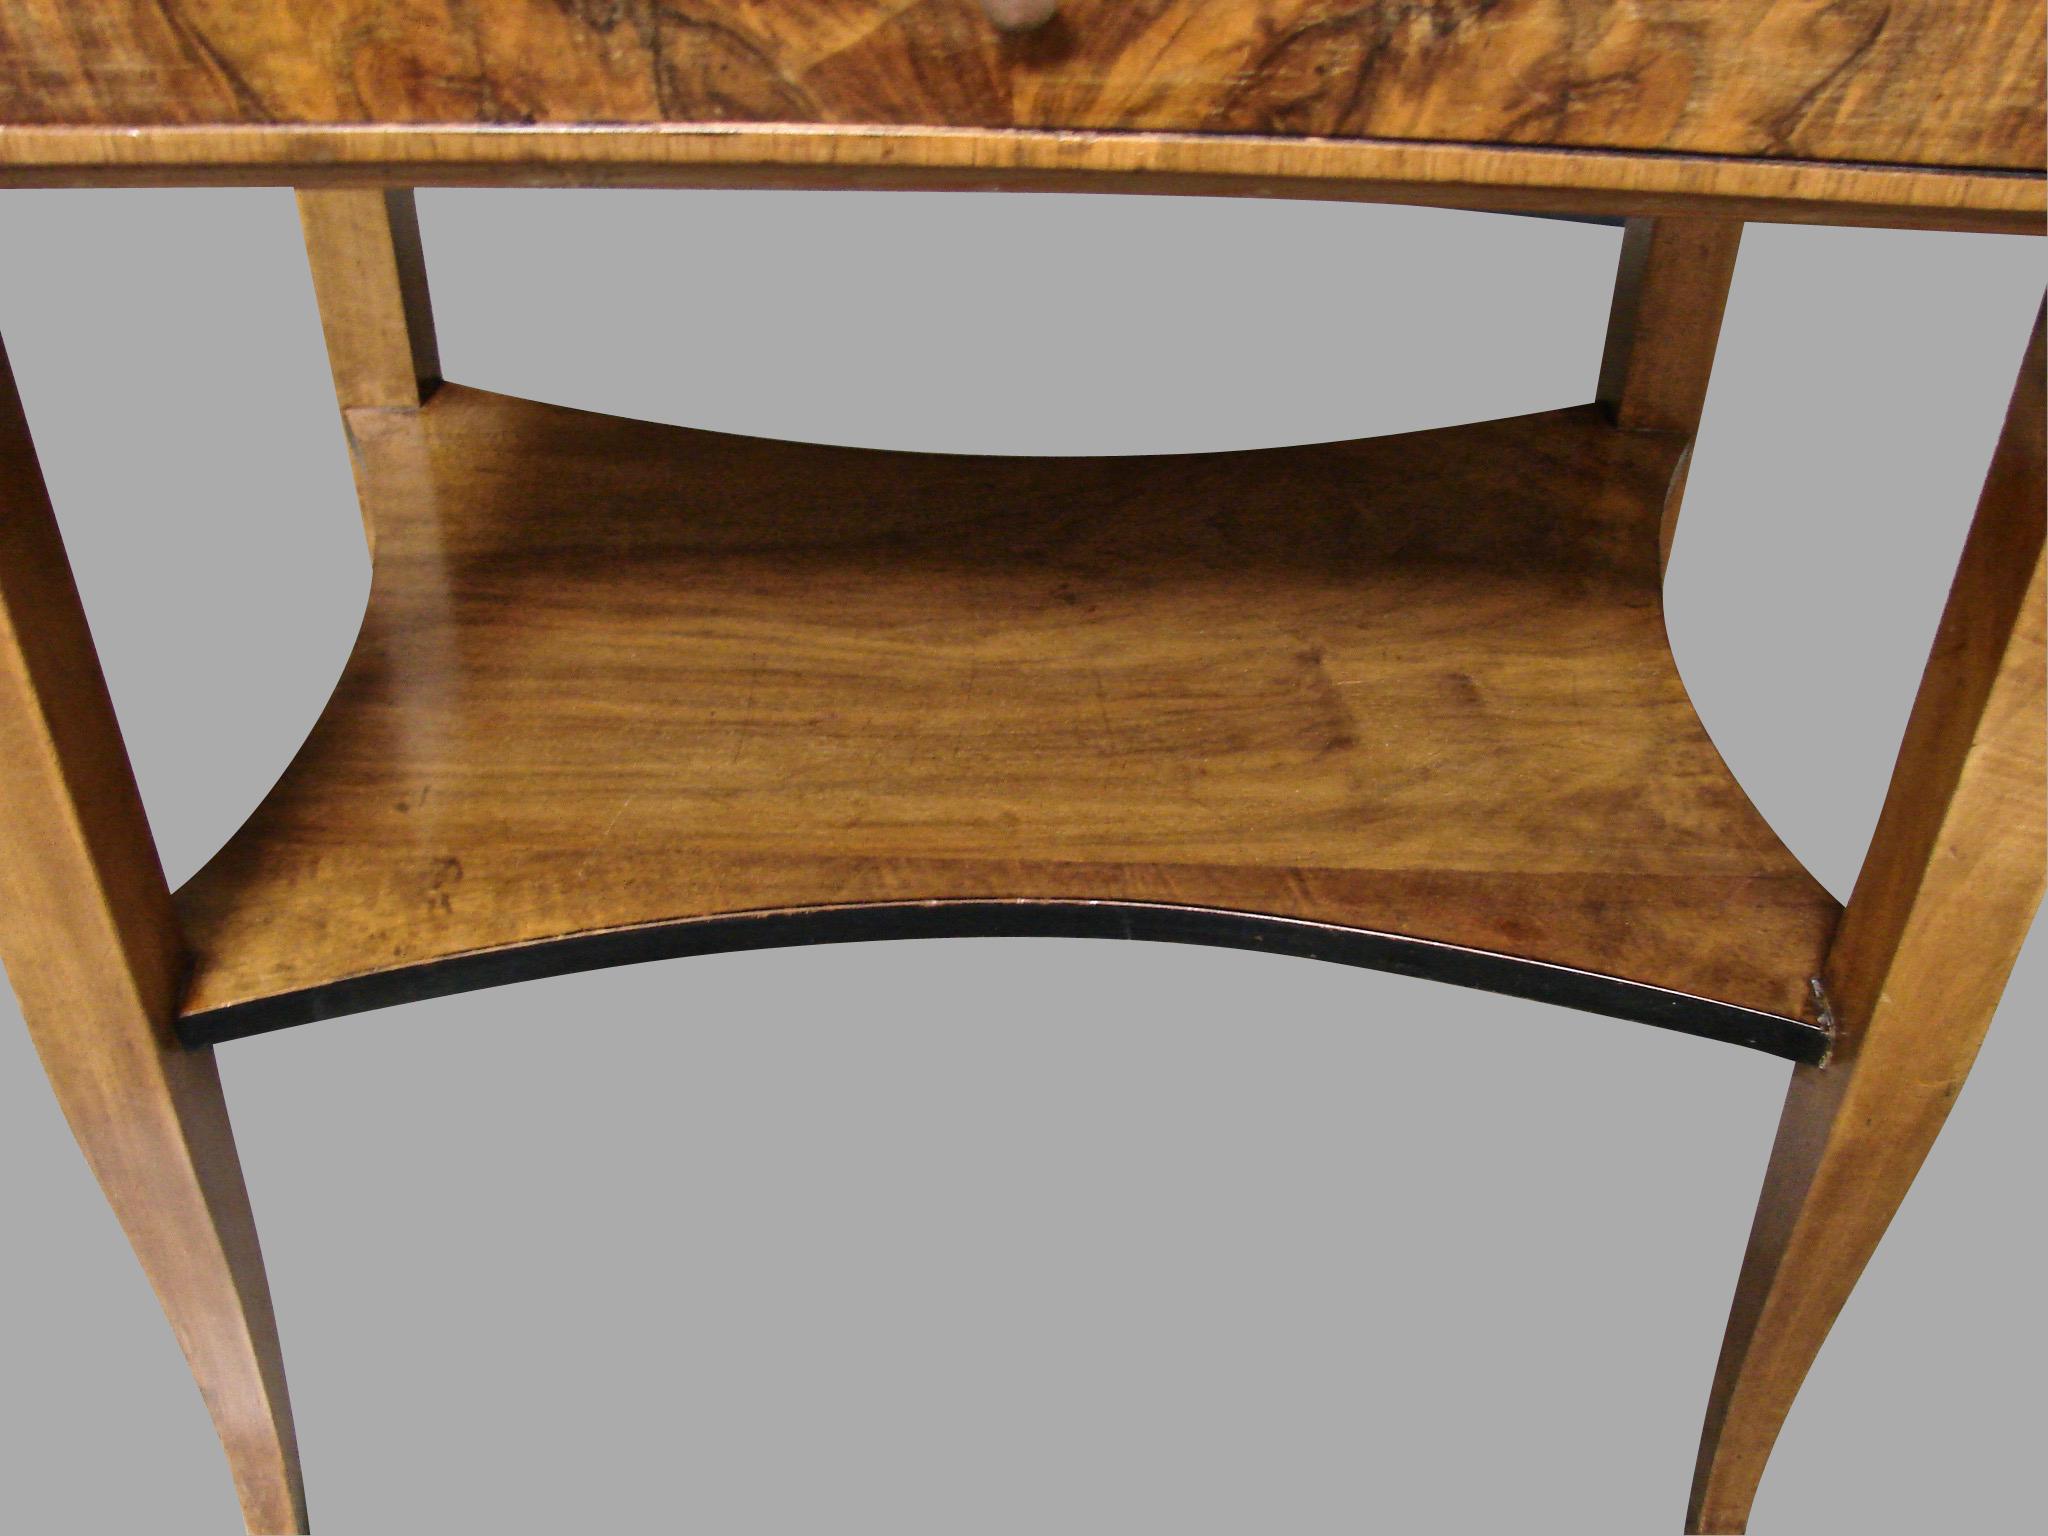 Biedermeier Burl Walnut Work Table with 2 Drawers and Lower Shelf 2